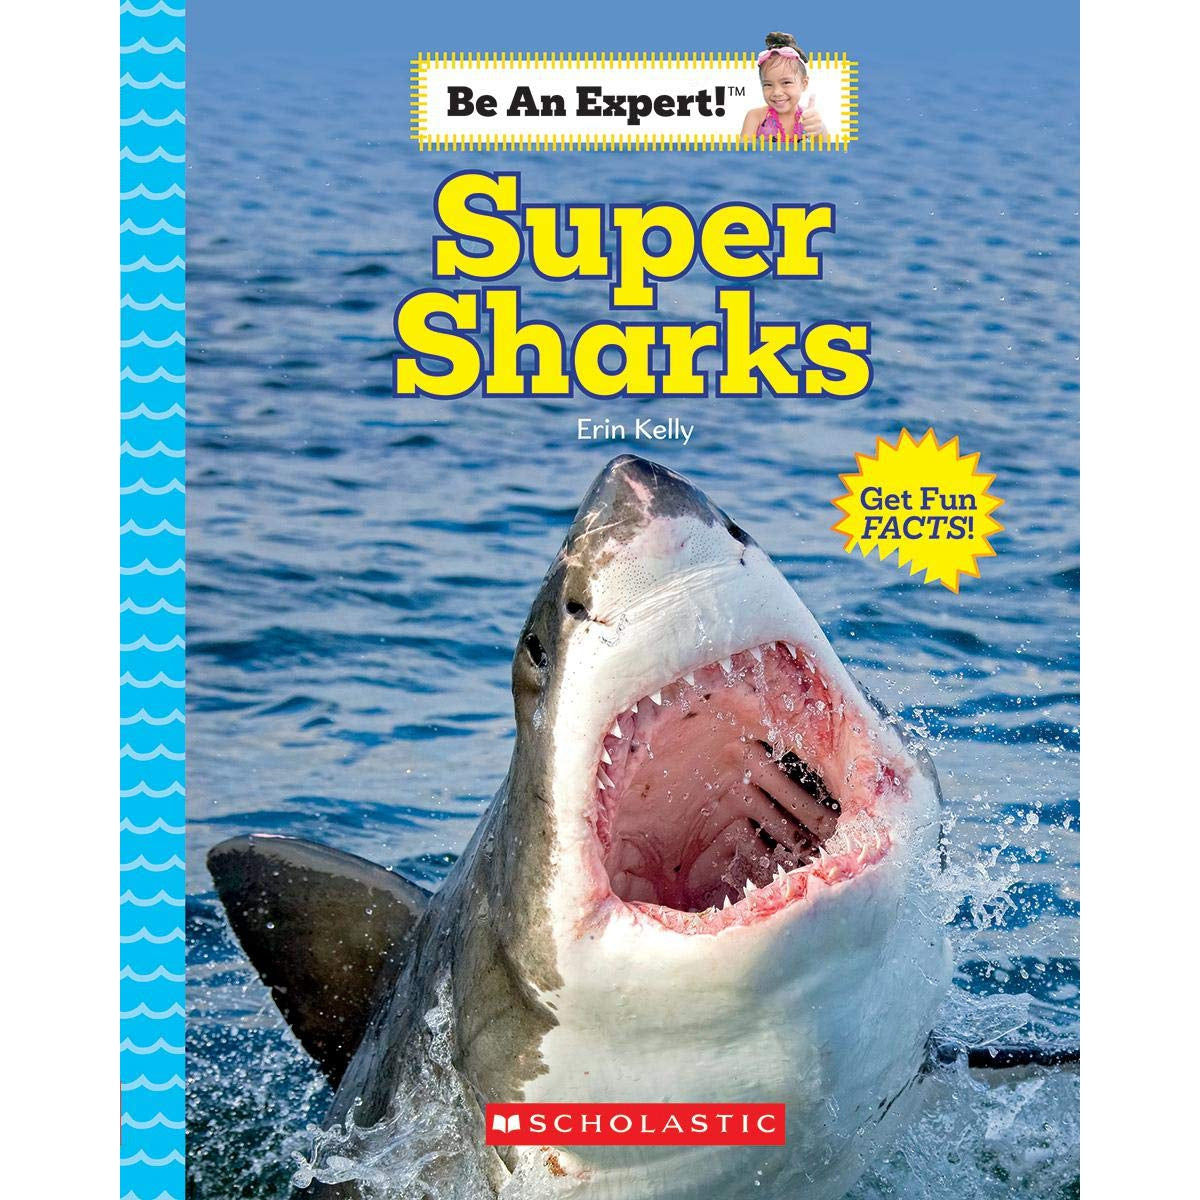 Super Sharks (Be an Expert!) [Book]